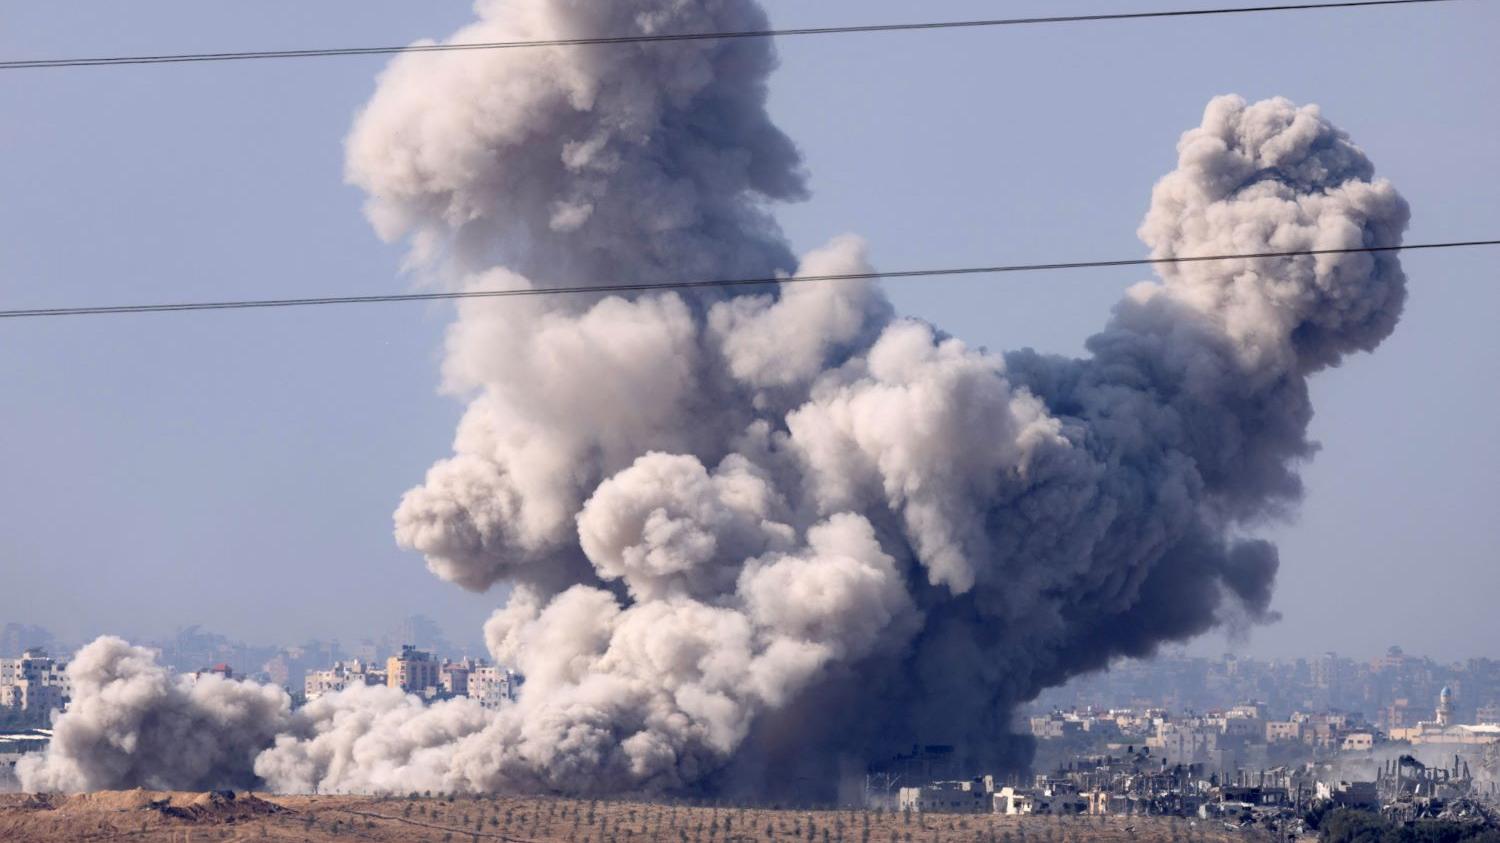 غارات إسرائيلية مكثفة على قطاع غزة.. والمقاومة تحقق إصابات مباشرة في صفوف قوات الاحتلال